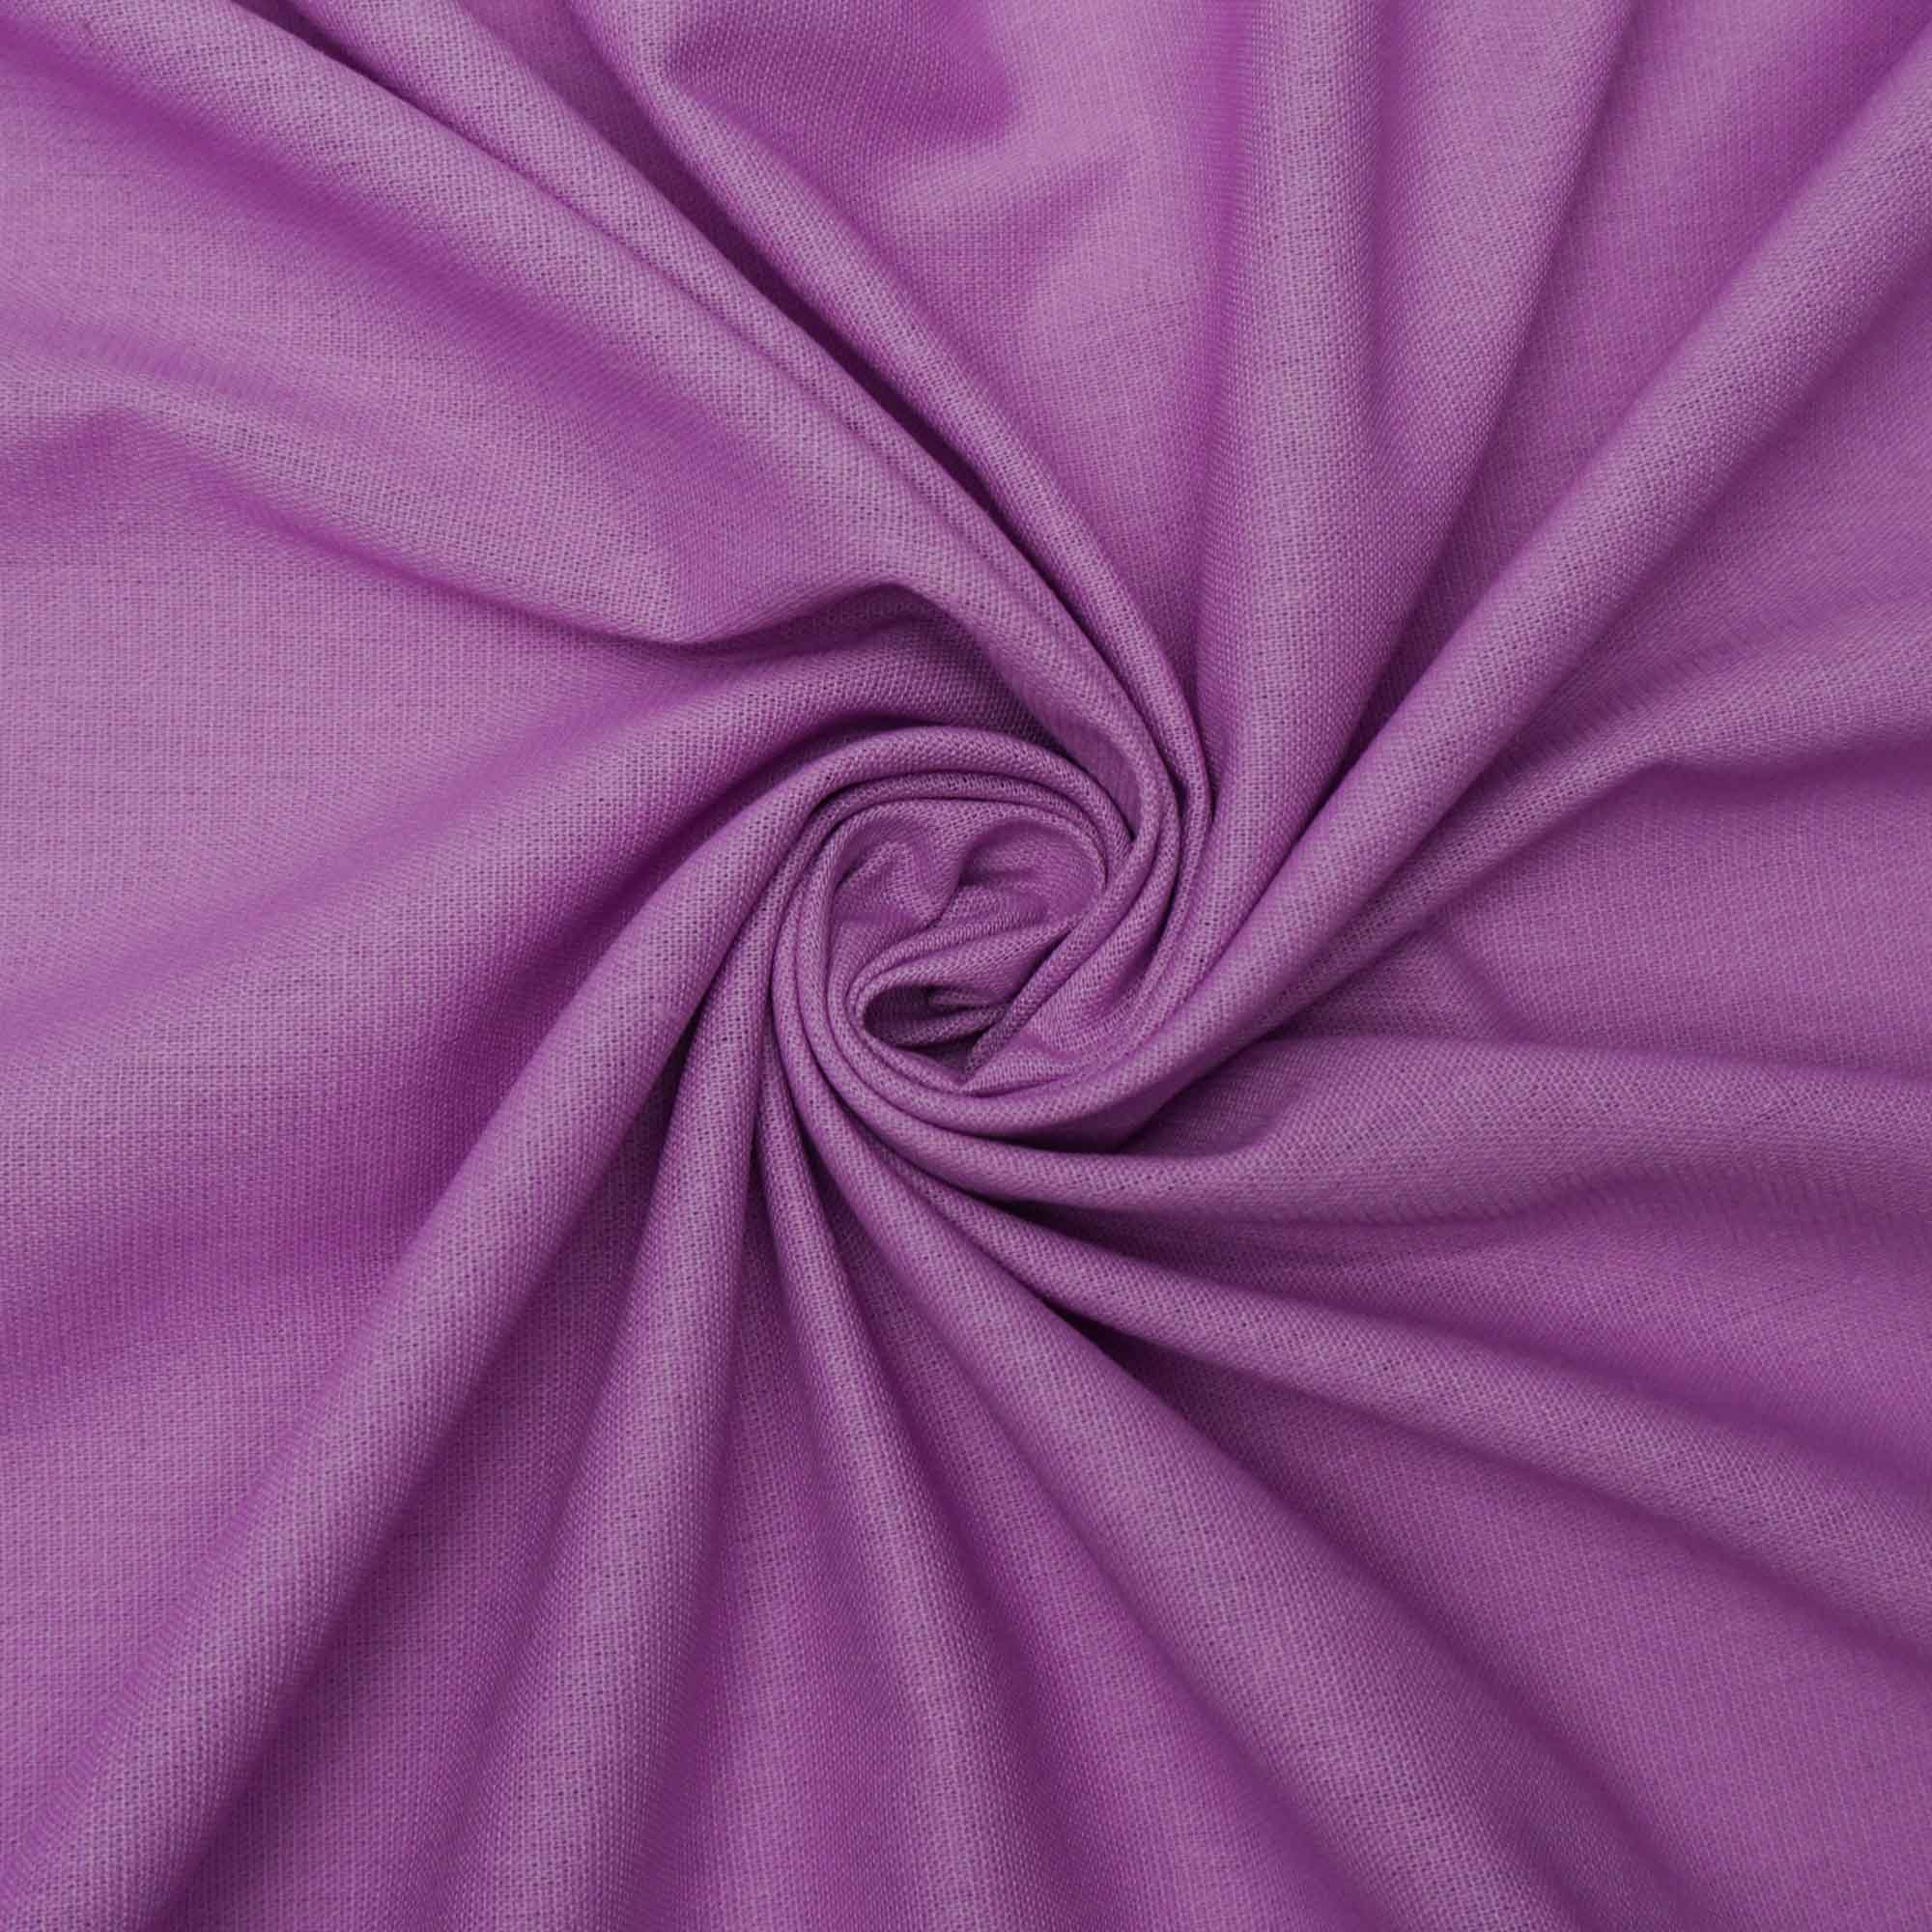 Tecido linho misto com elastano lilás